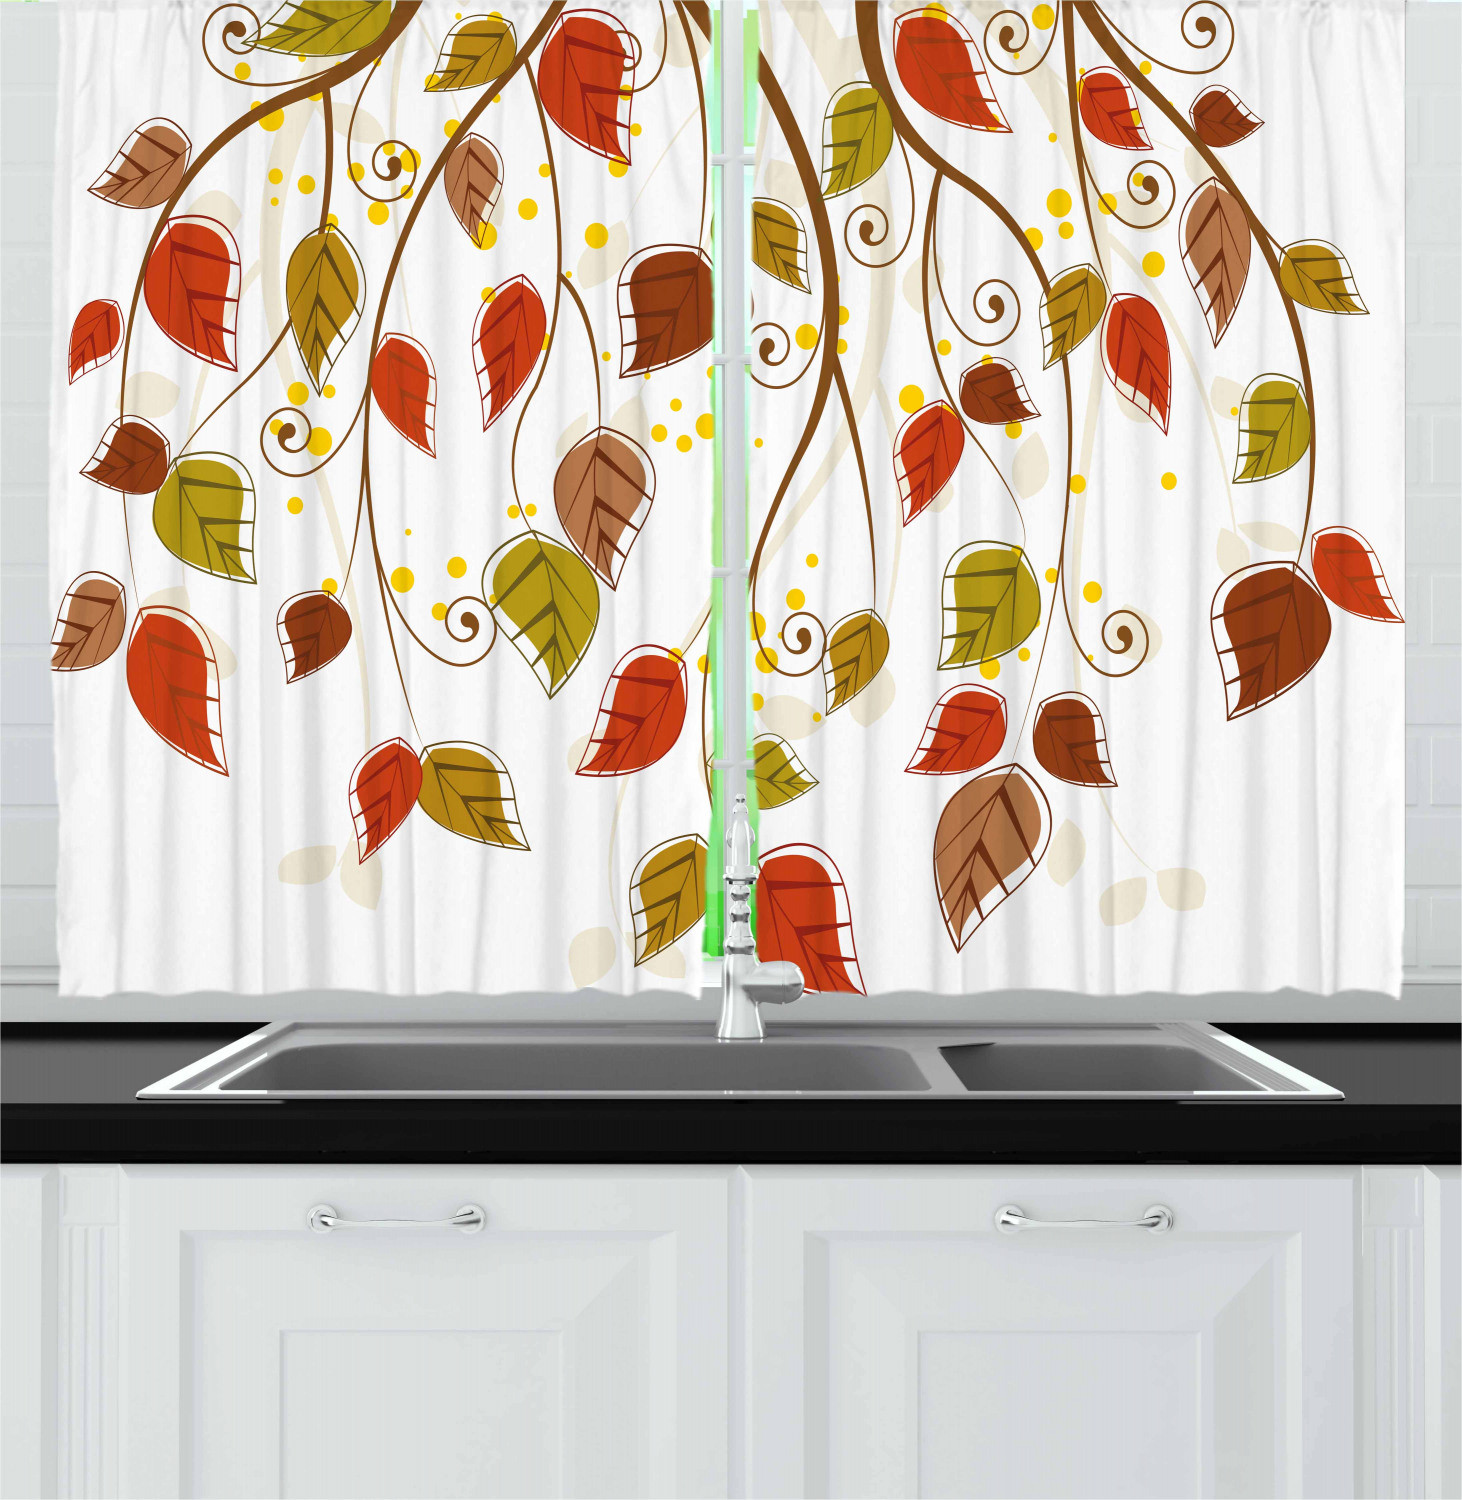 Autumn Kitchen Curtains
 Autumn Design Kitchen Curtains 2 Panel Set Window Drapes